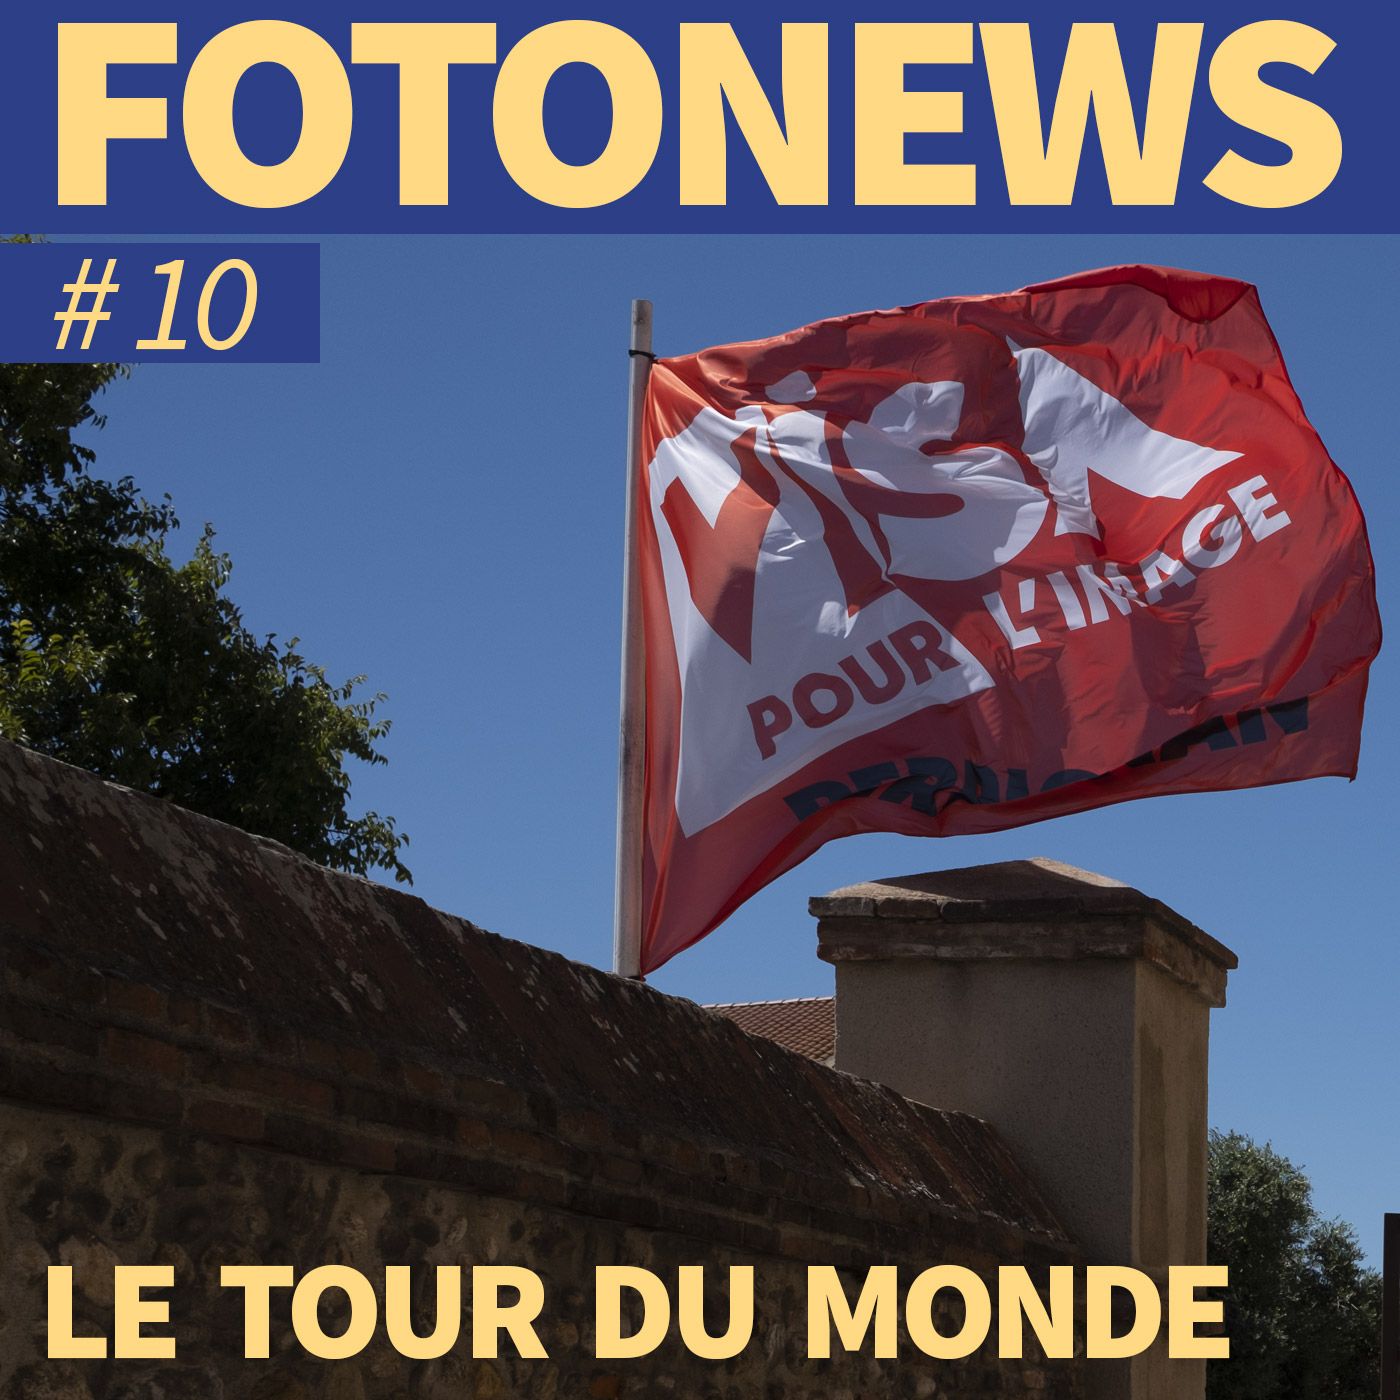 Fotonews #10 - LE TOUR DU MONDE